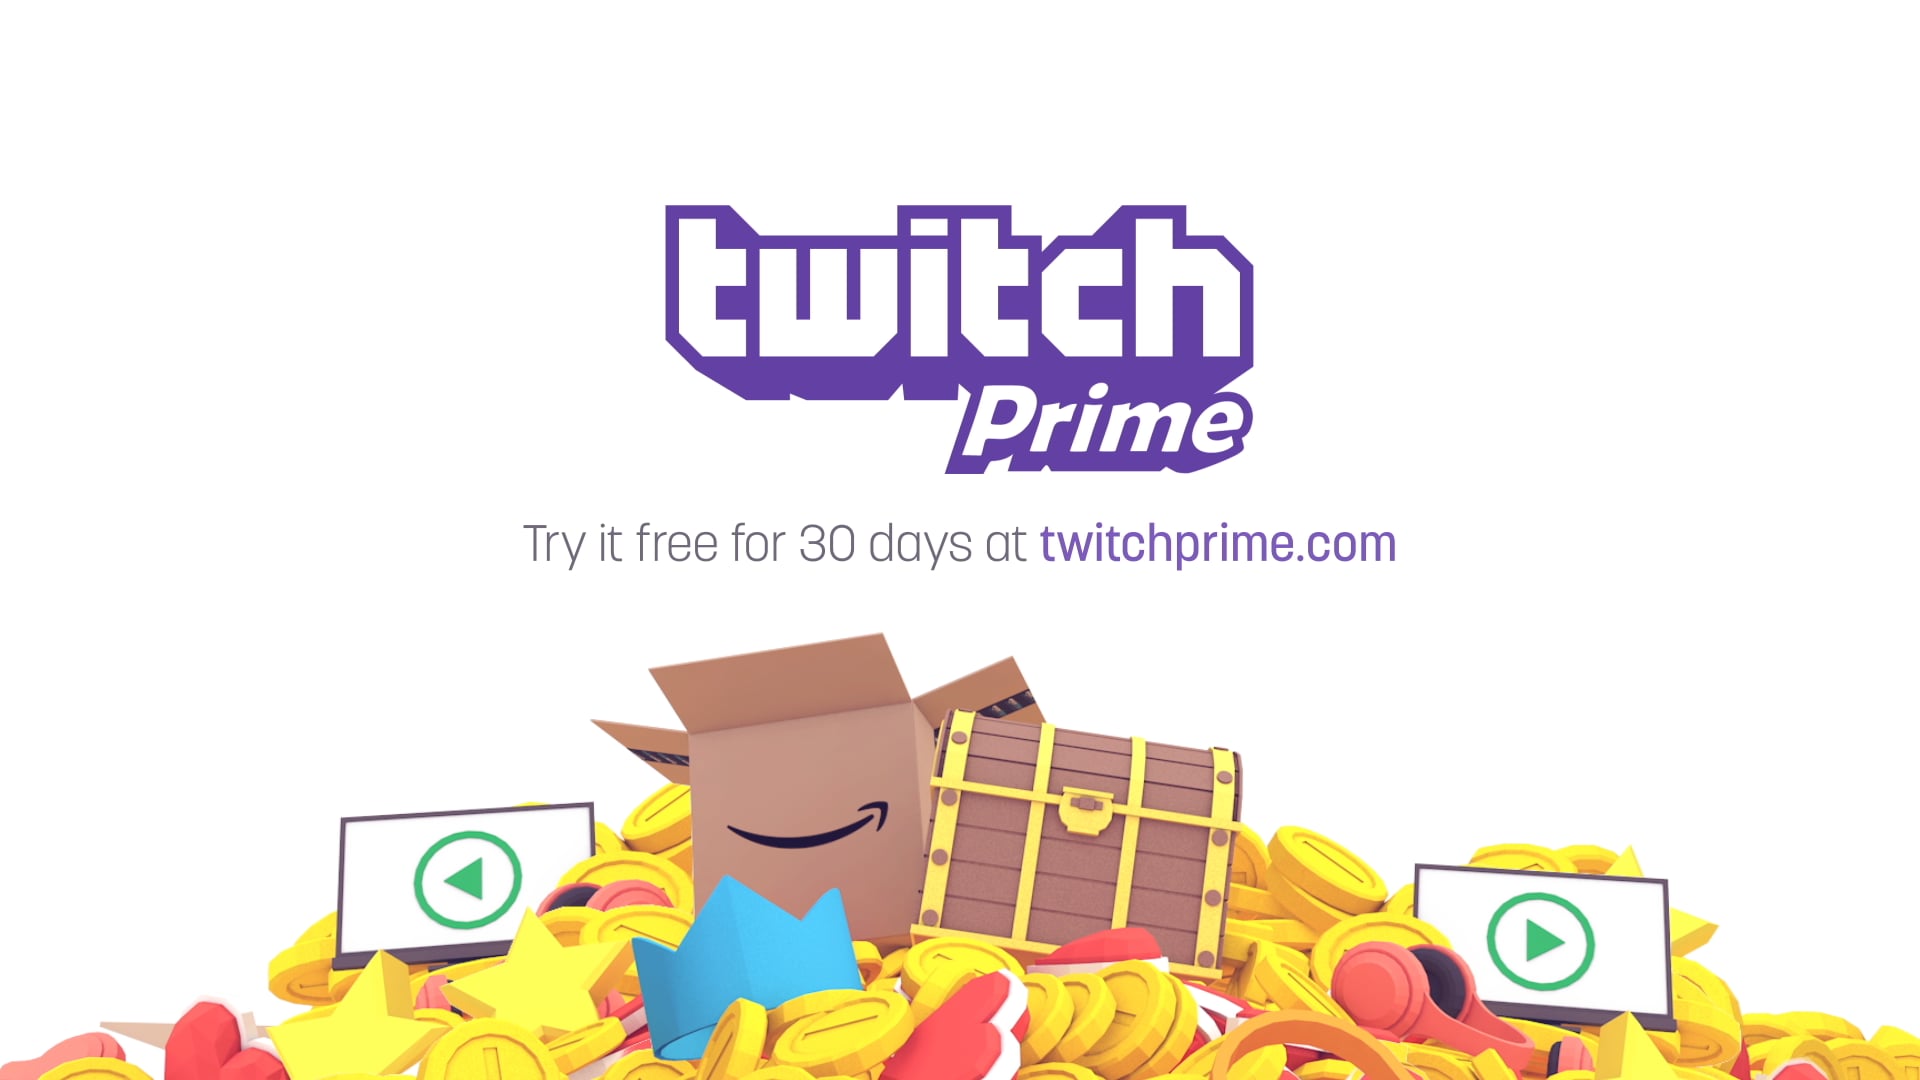 Introducing: Twitch Prime!  Introducing Twitch Prime! Free game